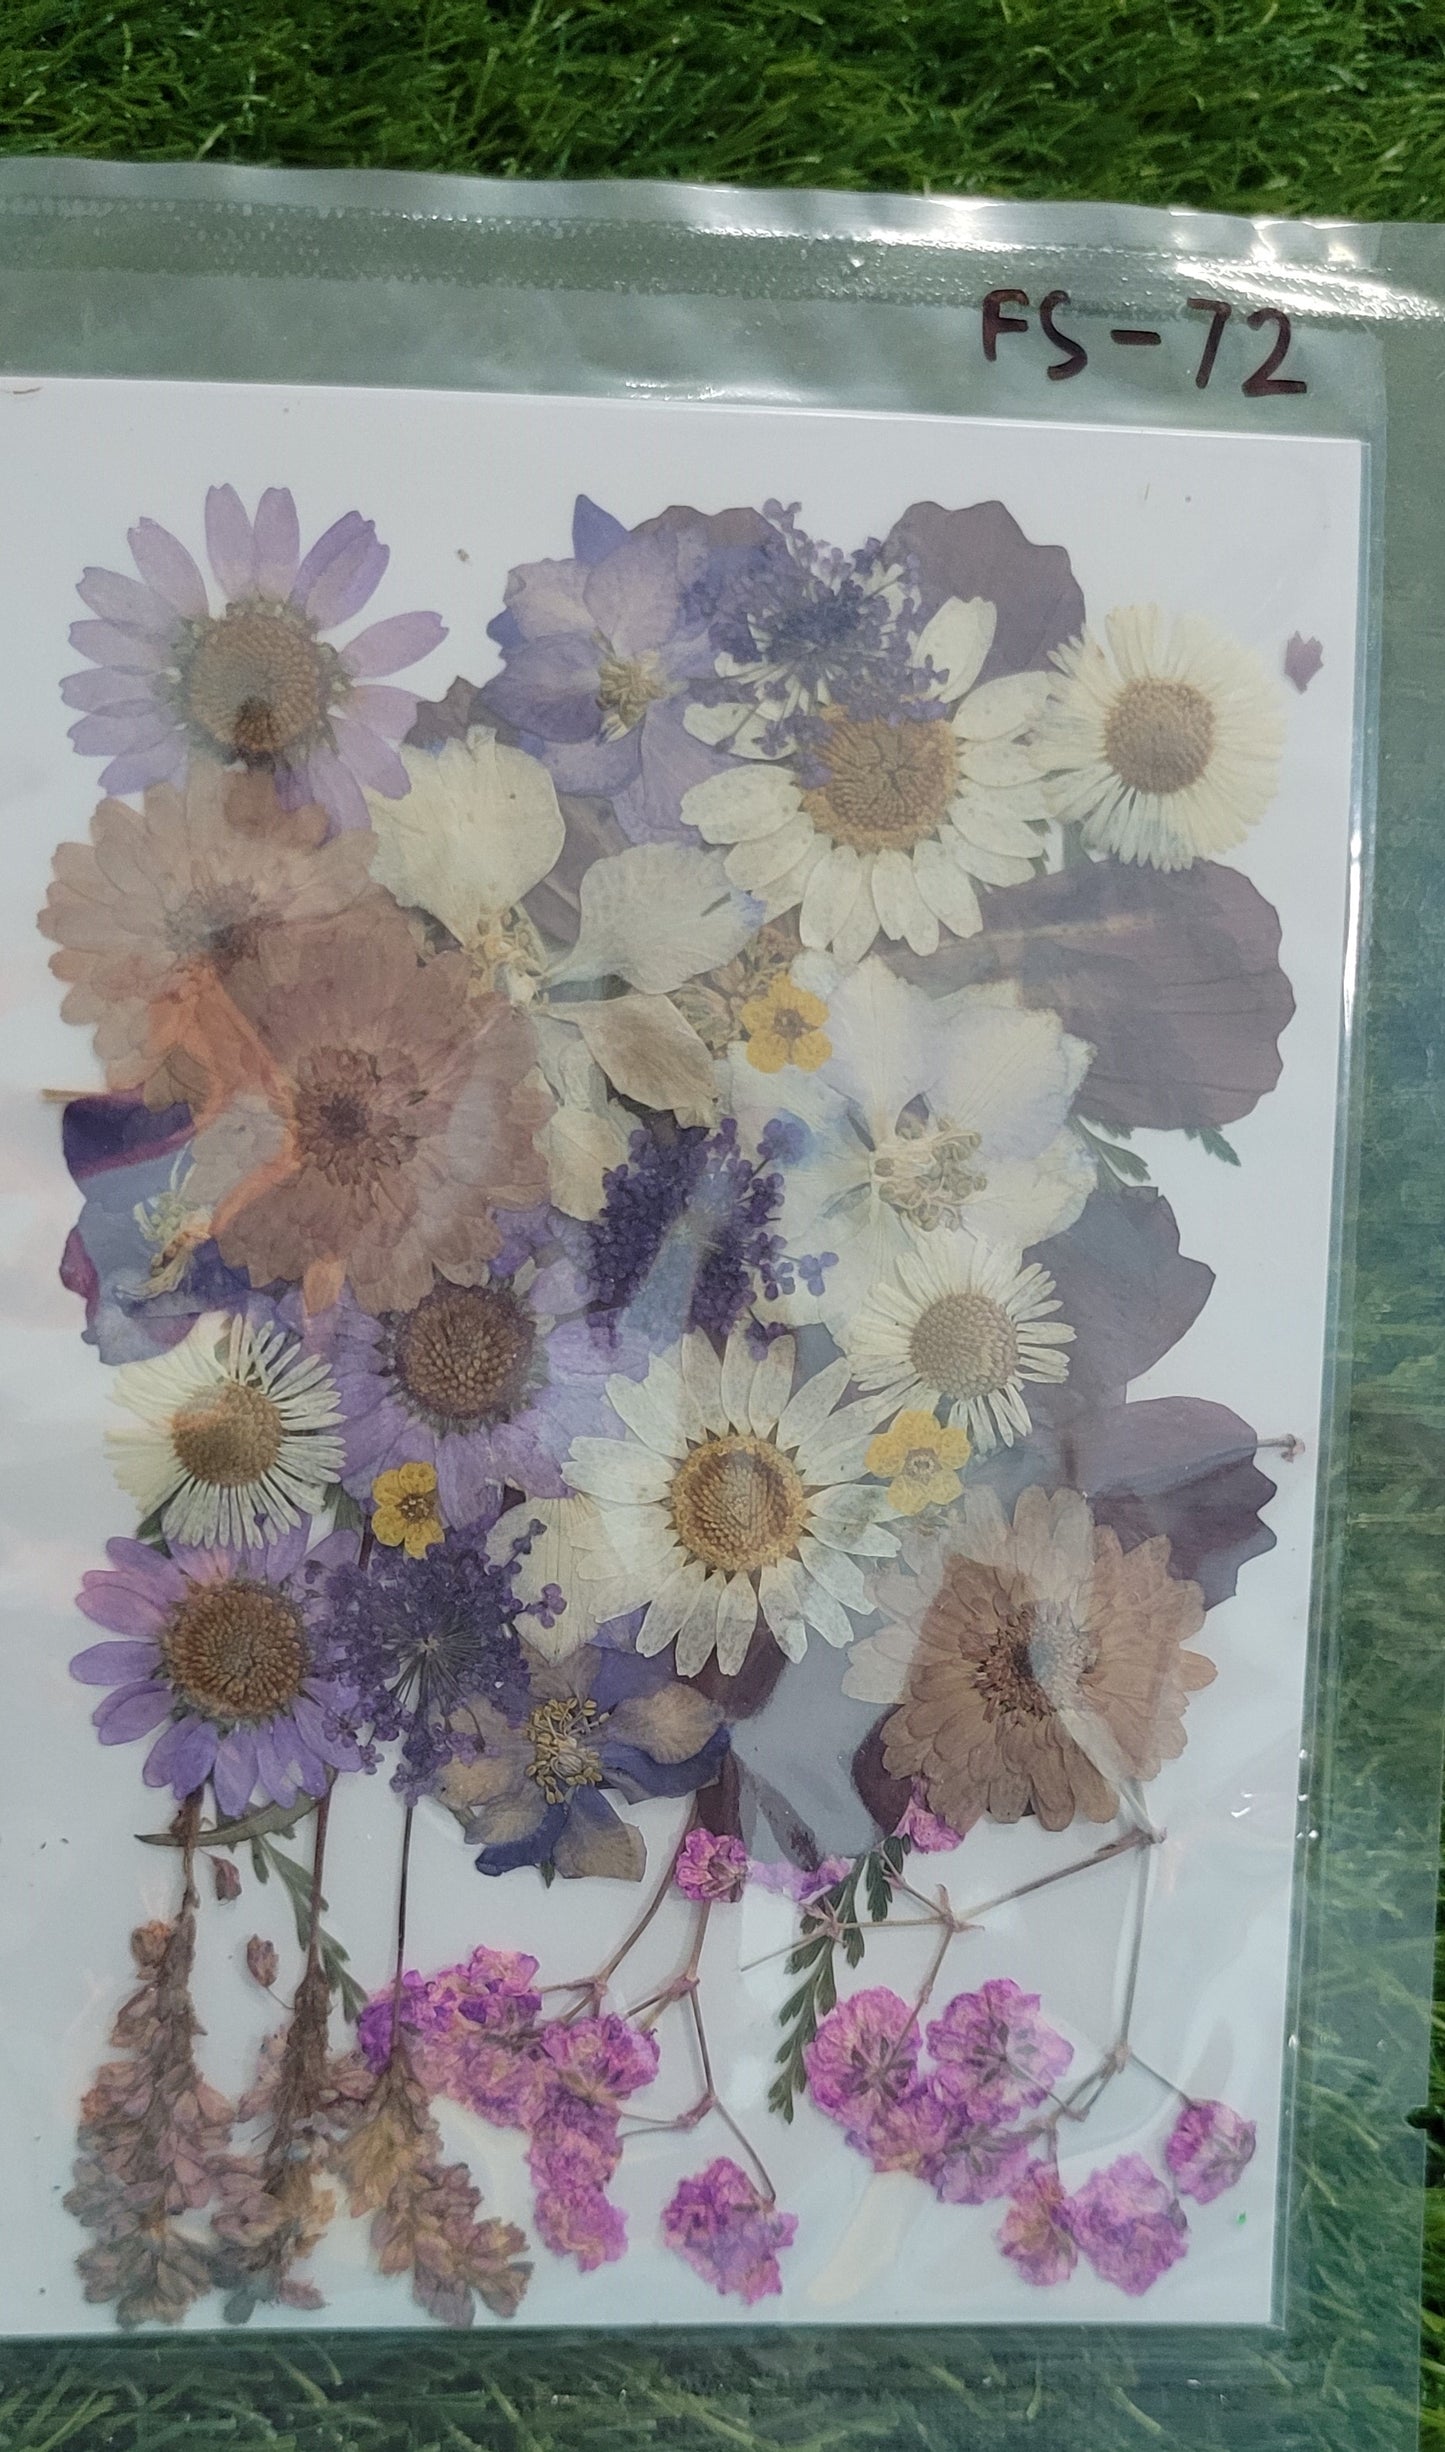 Big Pressed Mix Flower Sheet (FS-72)